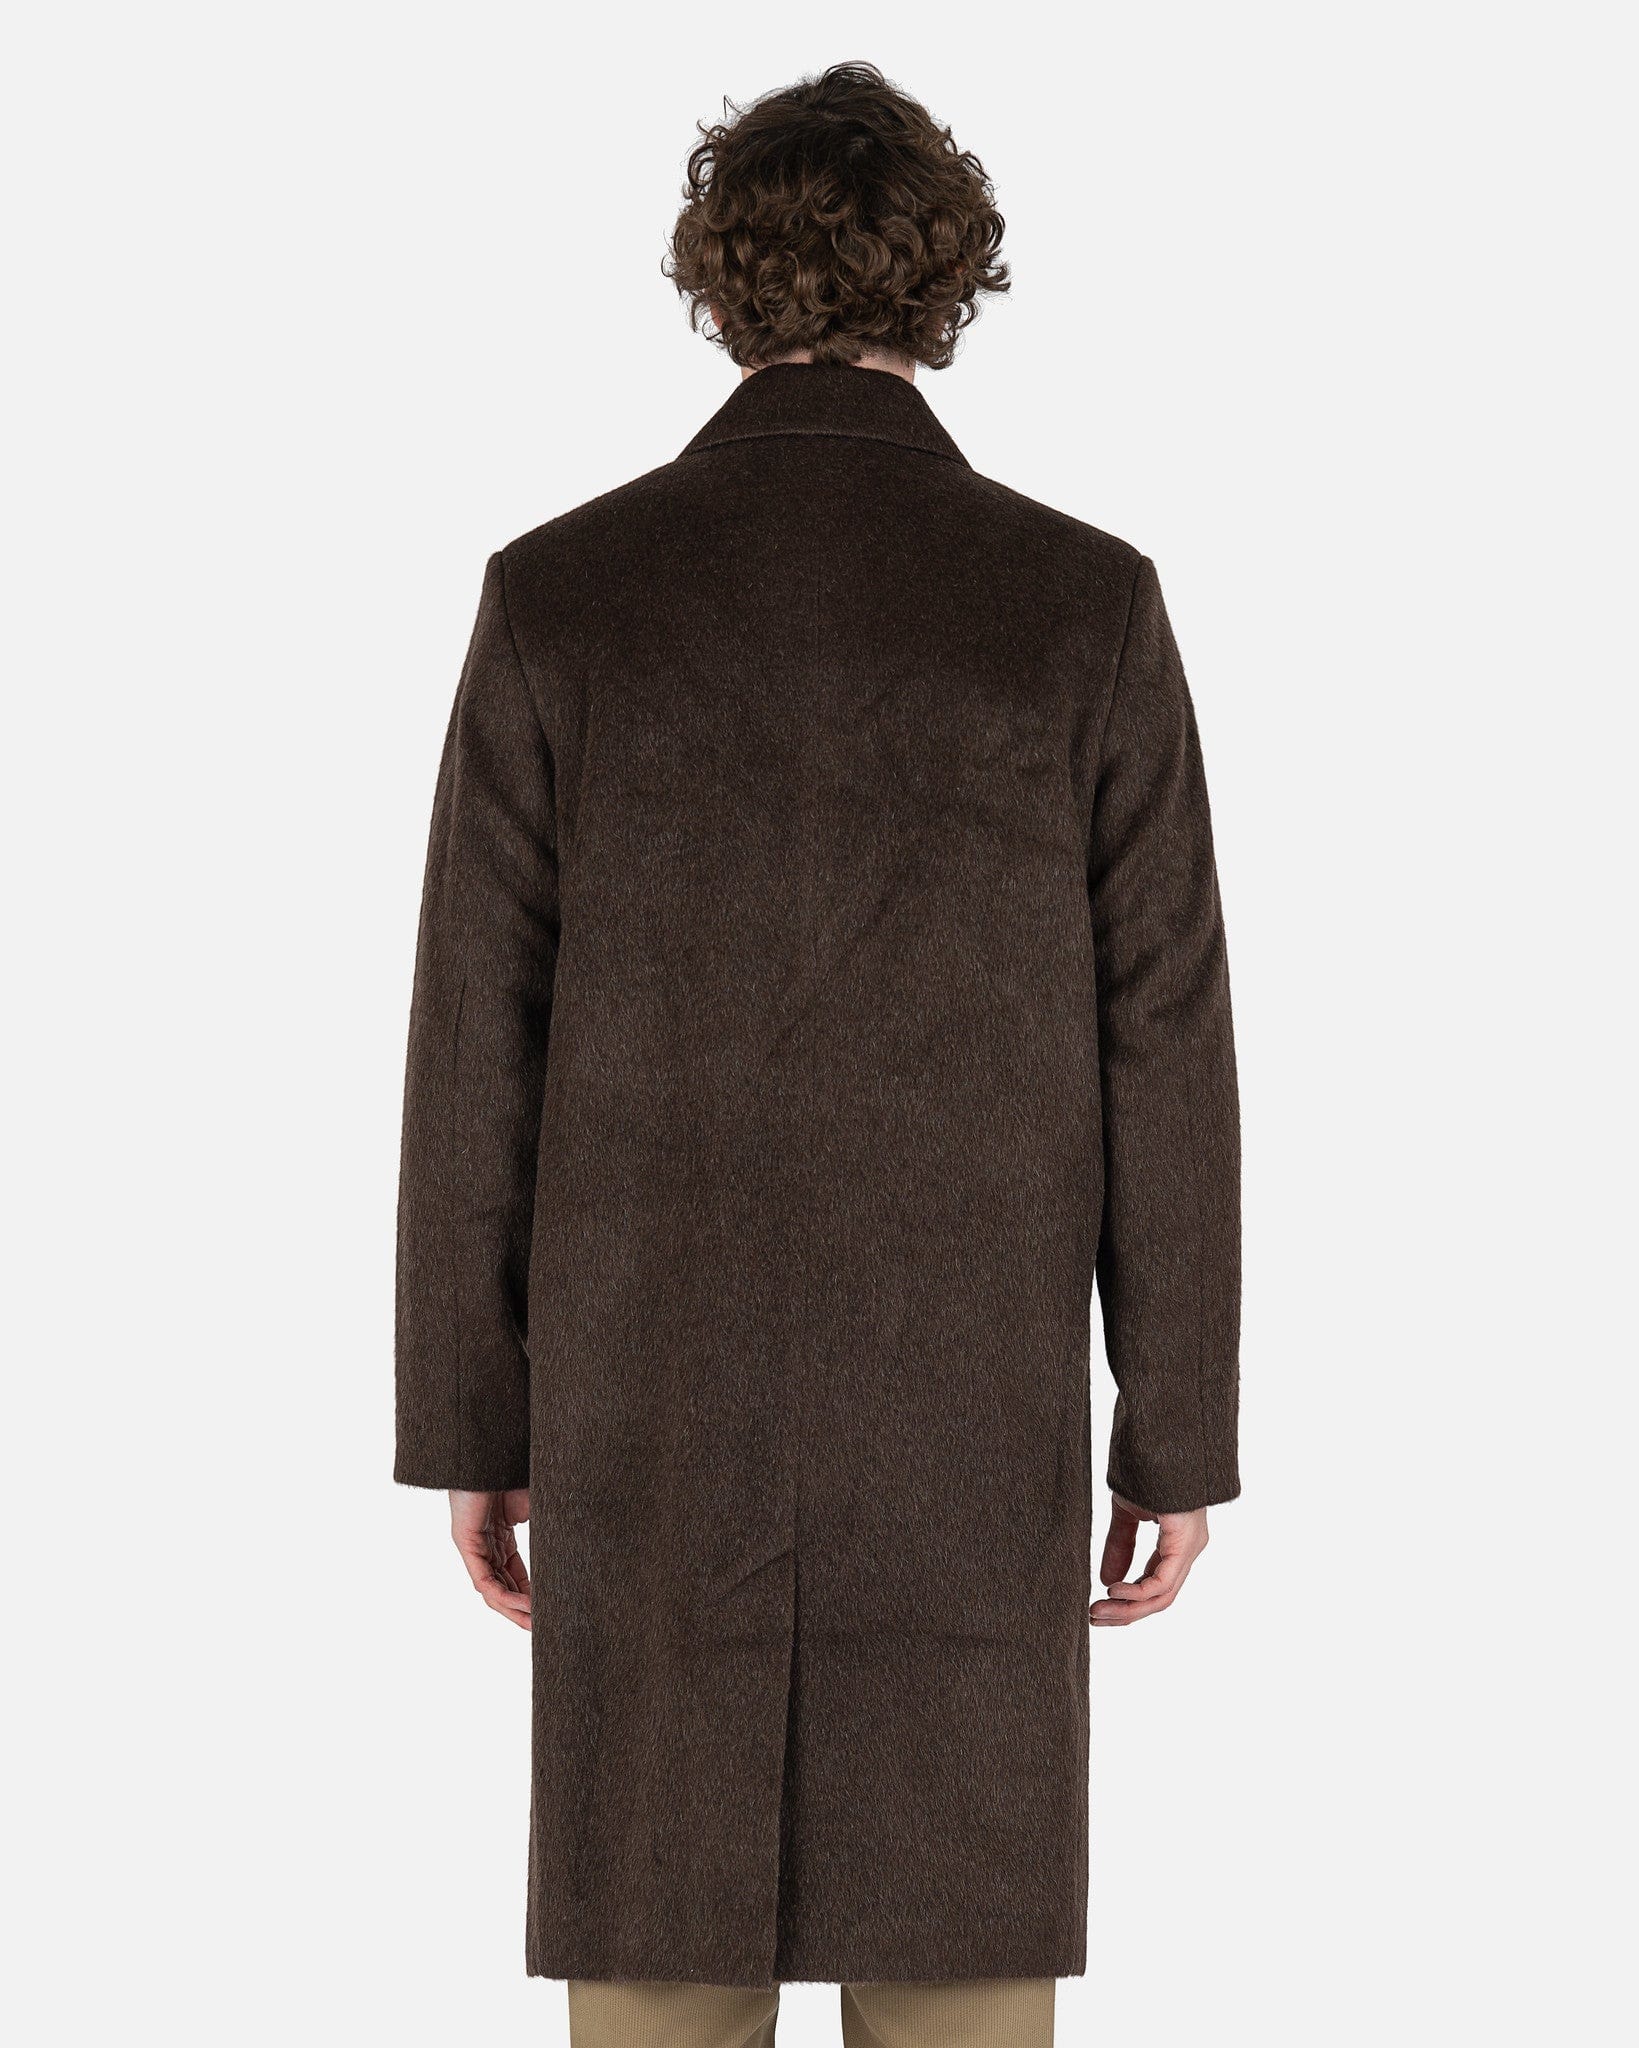 Esco Coat in Brown Mohair